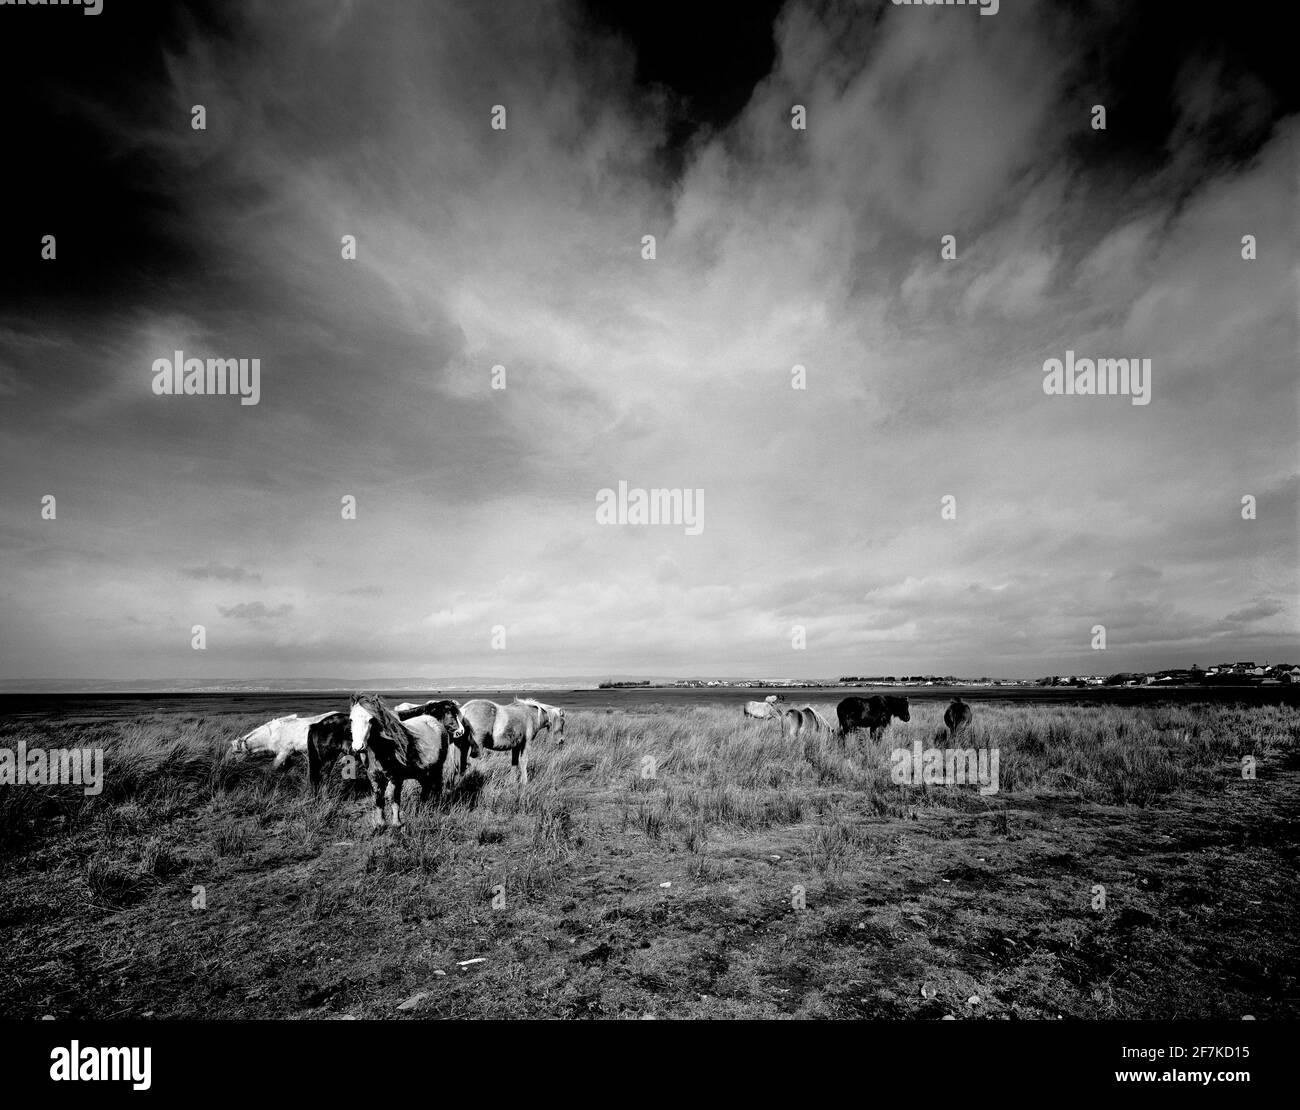 Wild horses black and white  image at Crofty, Gower Peninsula, Wales, UK Stock Photo